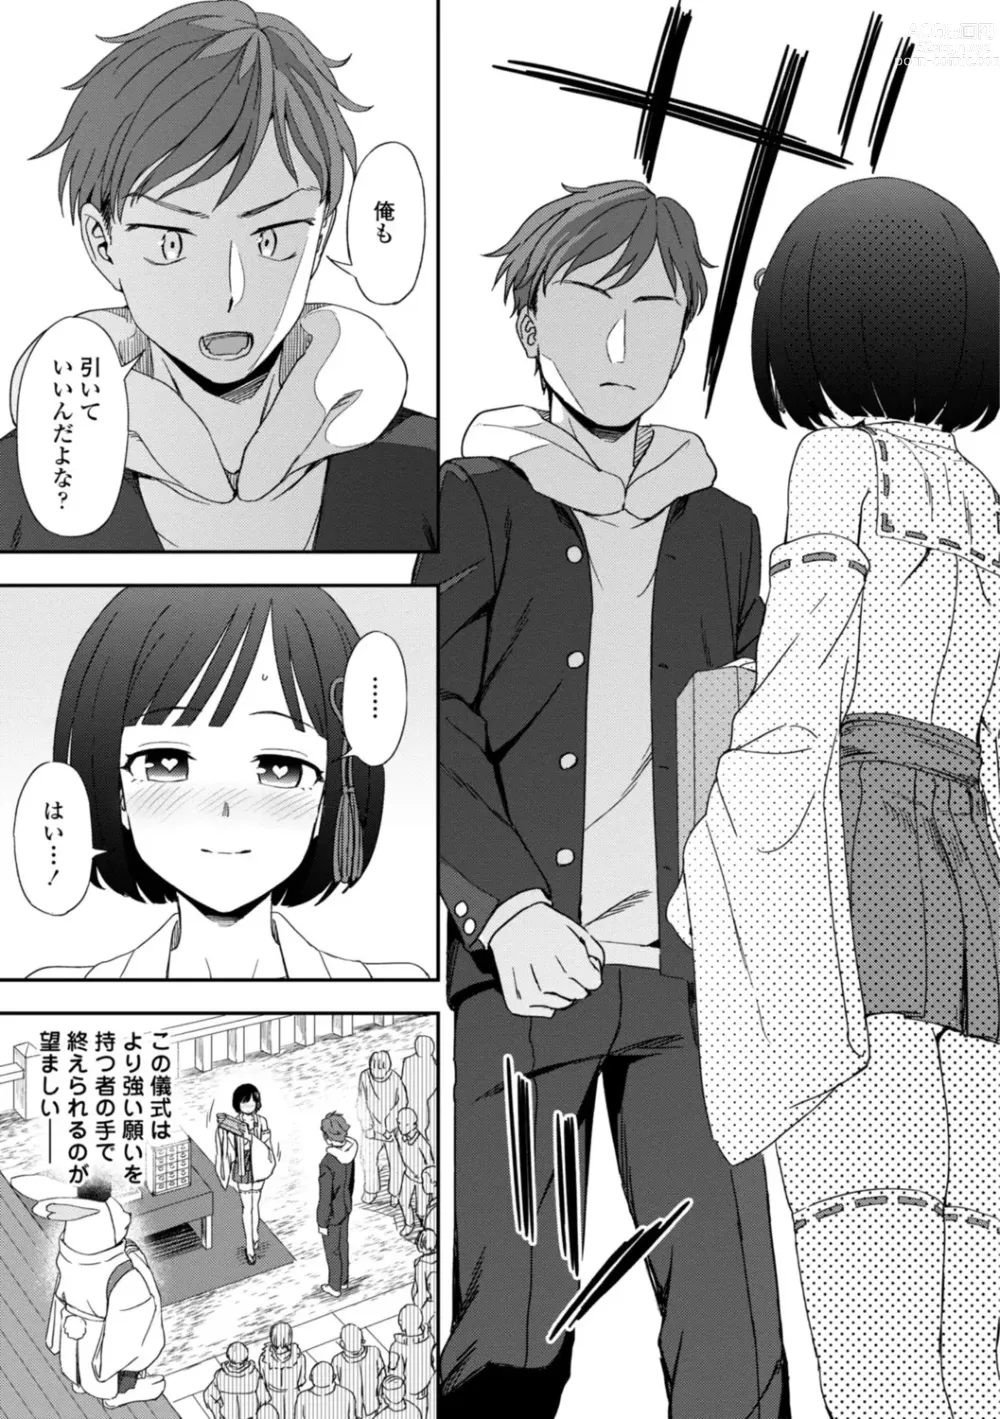 Page 13 of manga Watashi no Subete Sasagemasu - Ill give you all of mine.